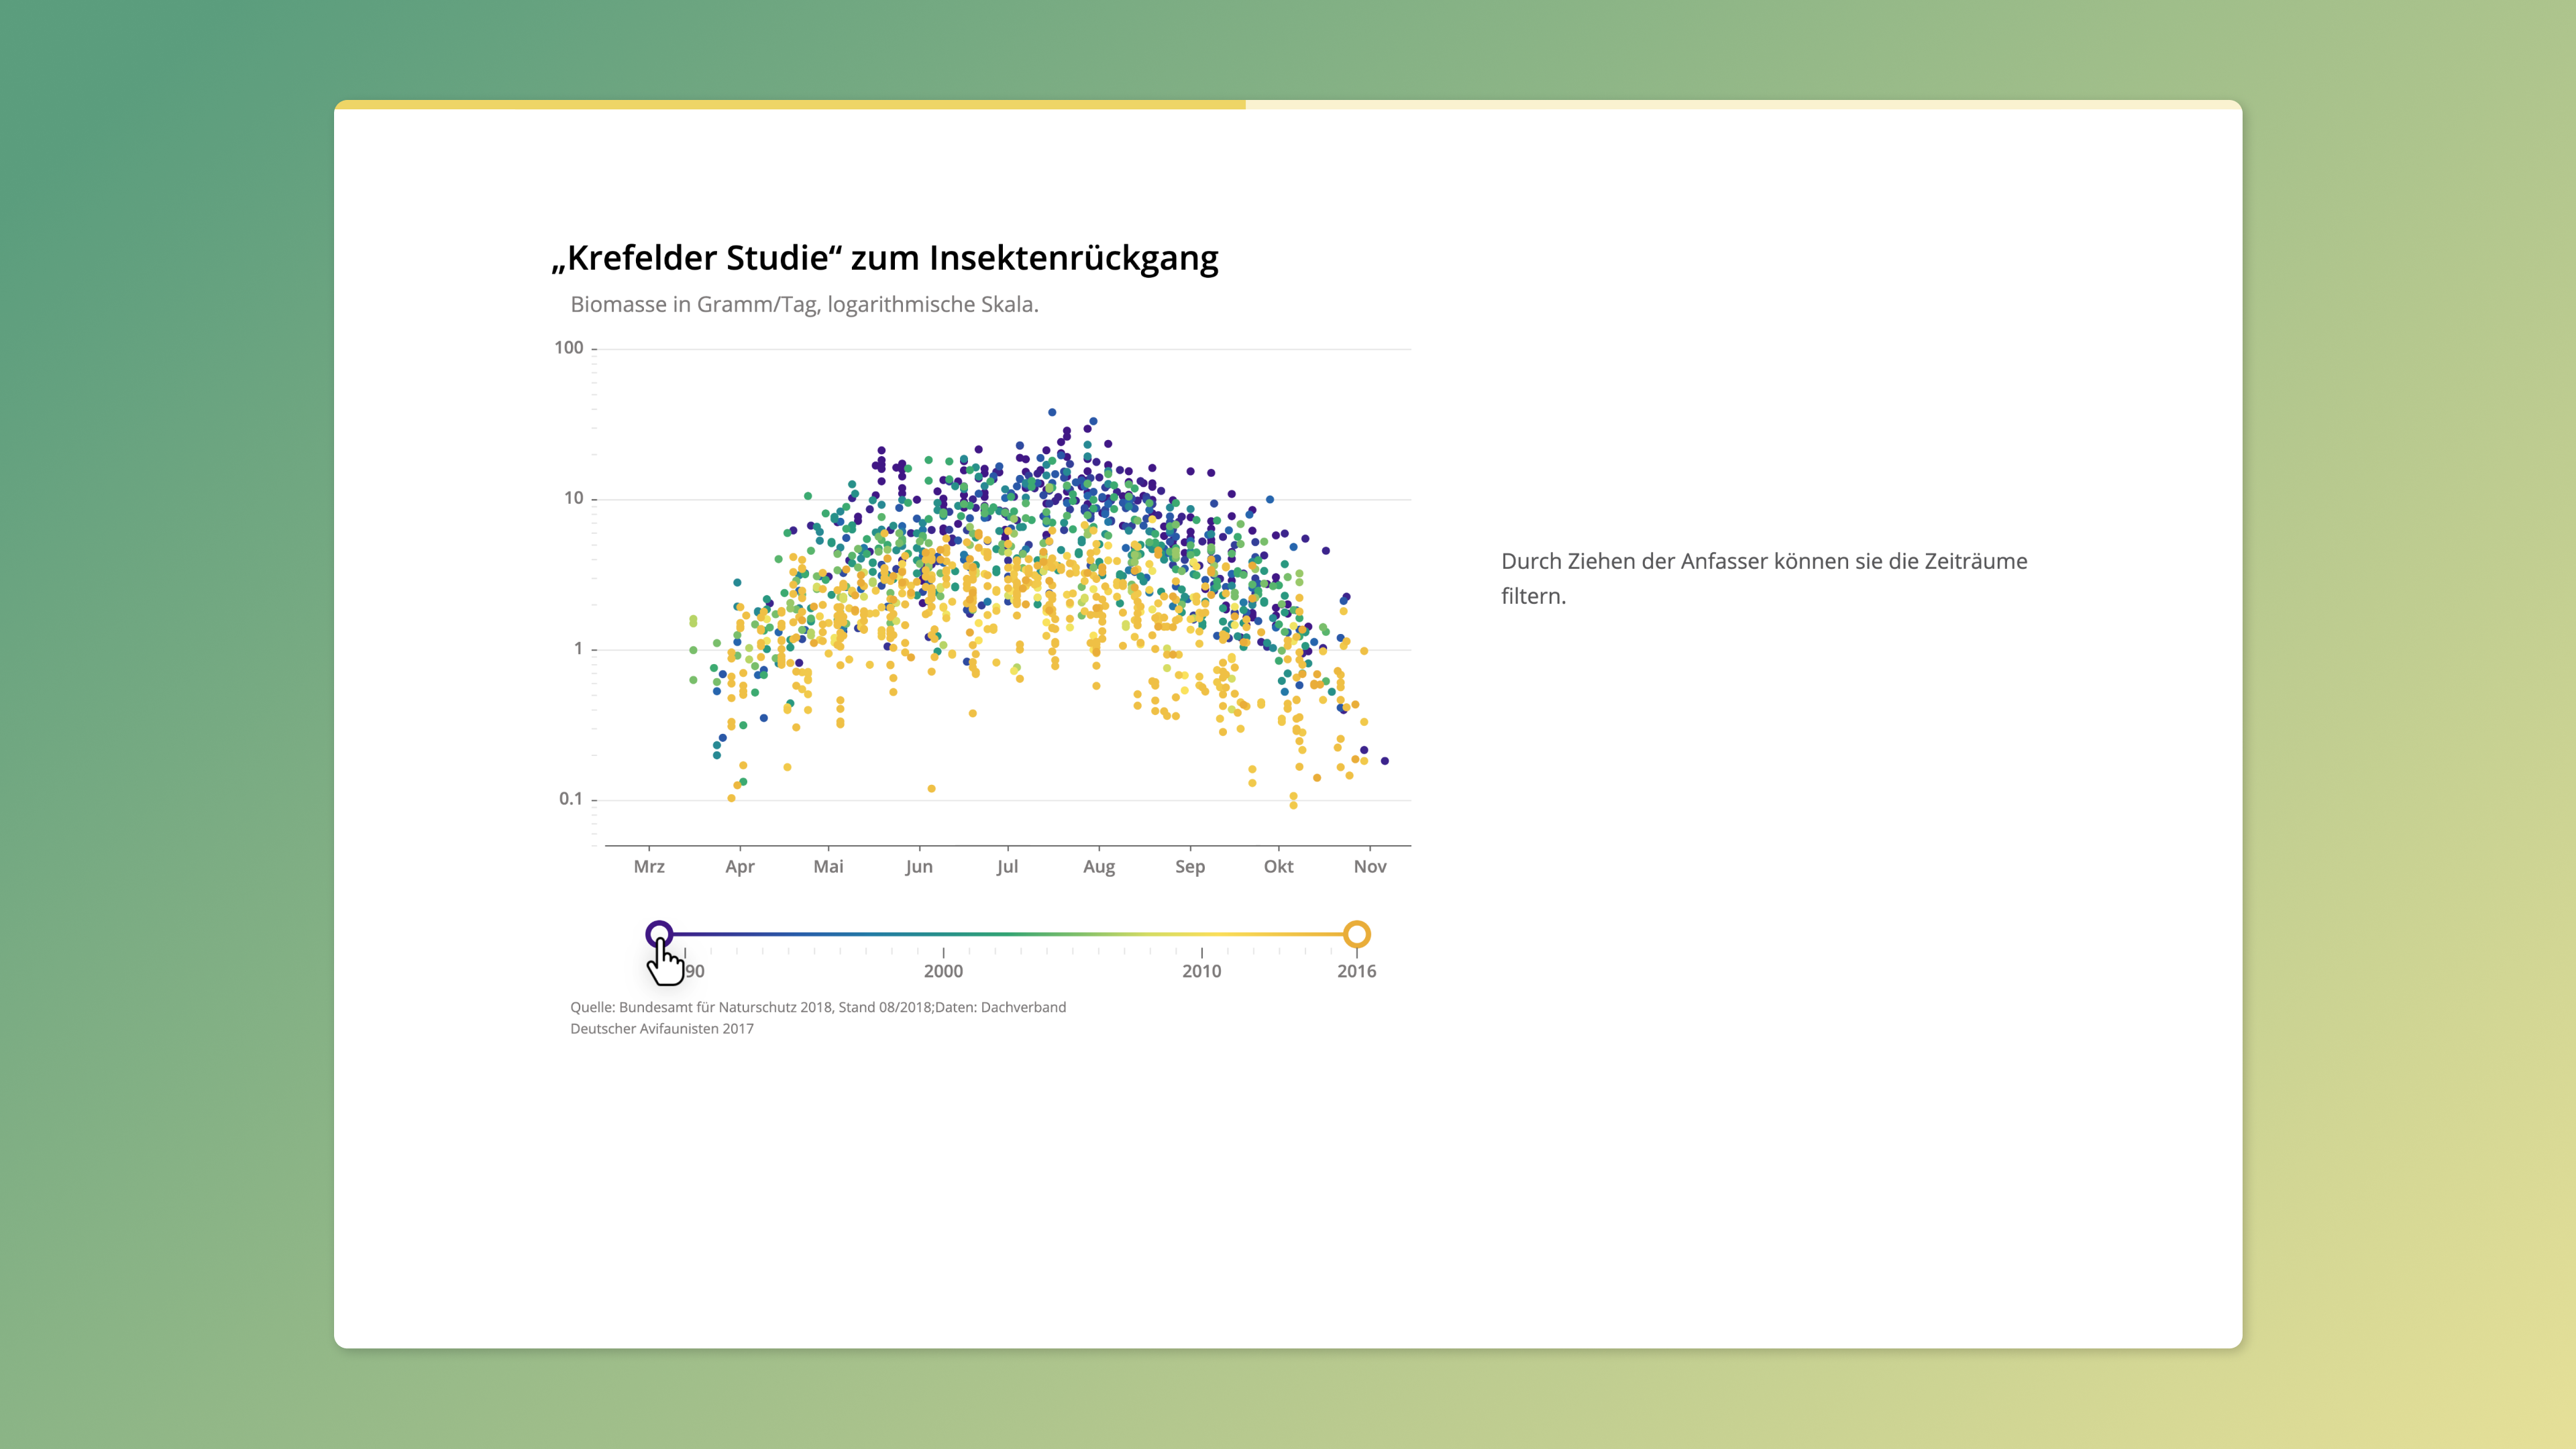 Ein Streudiagramm mit farbcodierten Datenpunkten, die von blau über gelb bis grün reichen. Das Diagramm untersucht den Rückgang der Insekten, ein wichtiger Aspekt der biologischen Vielfalt. Unterhalb des Diagramms kann der Nutzer mit einem Schieberegler einen genaueren Zeitraum für die Datendarstellung wählen.